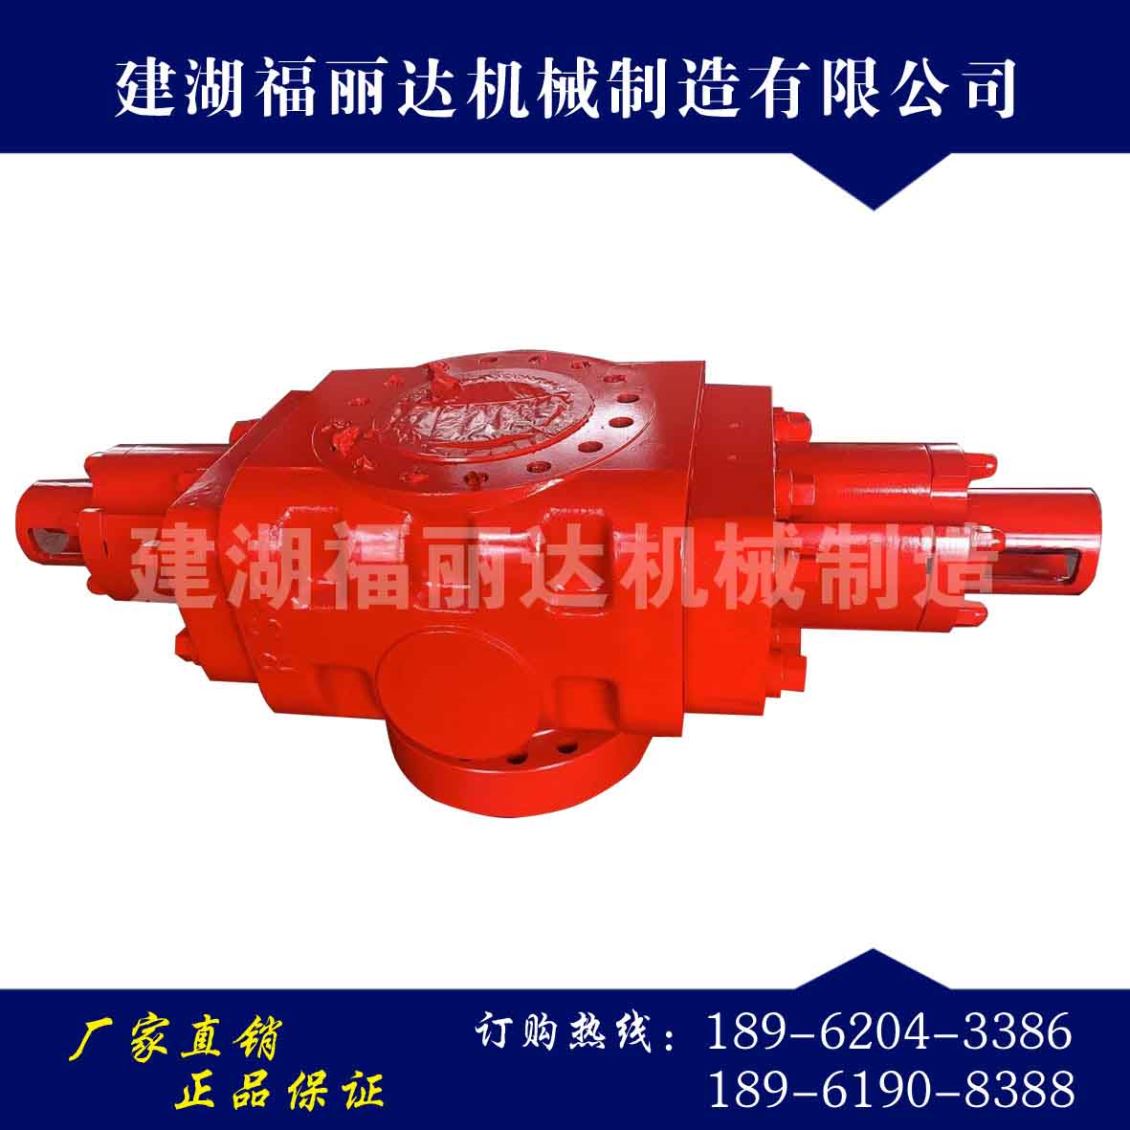 陕西防喷器是一种用于防止喷溅的装置